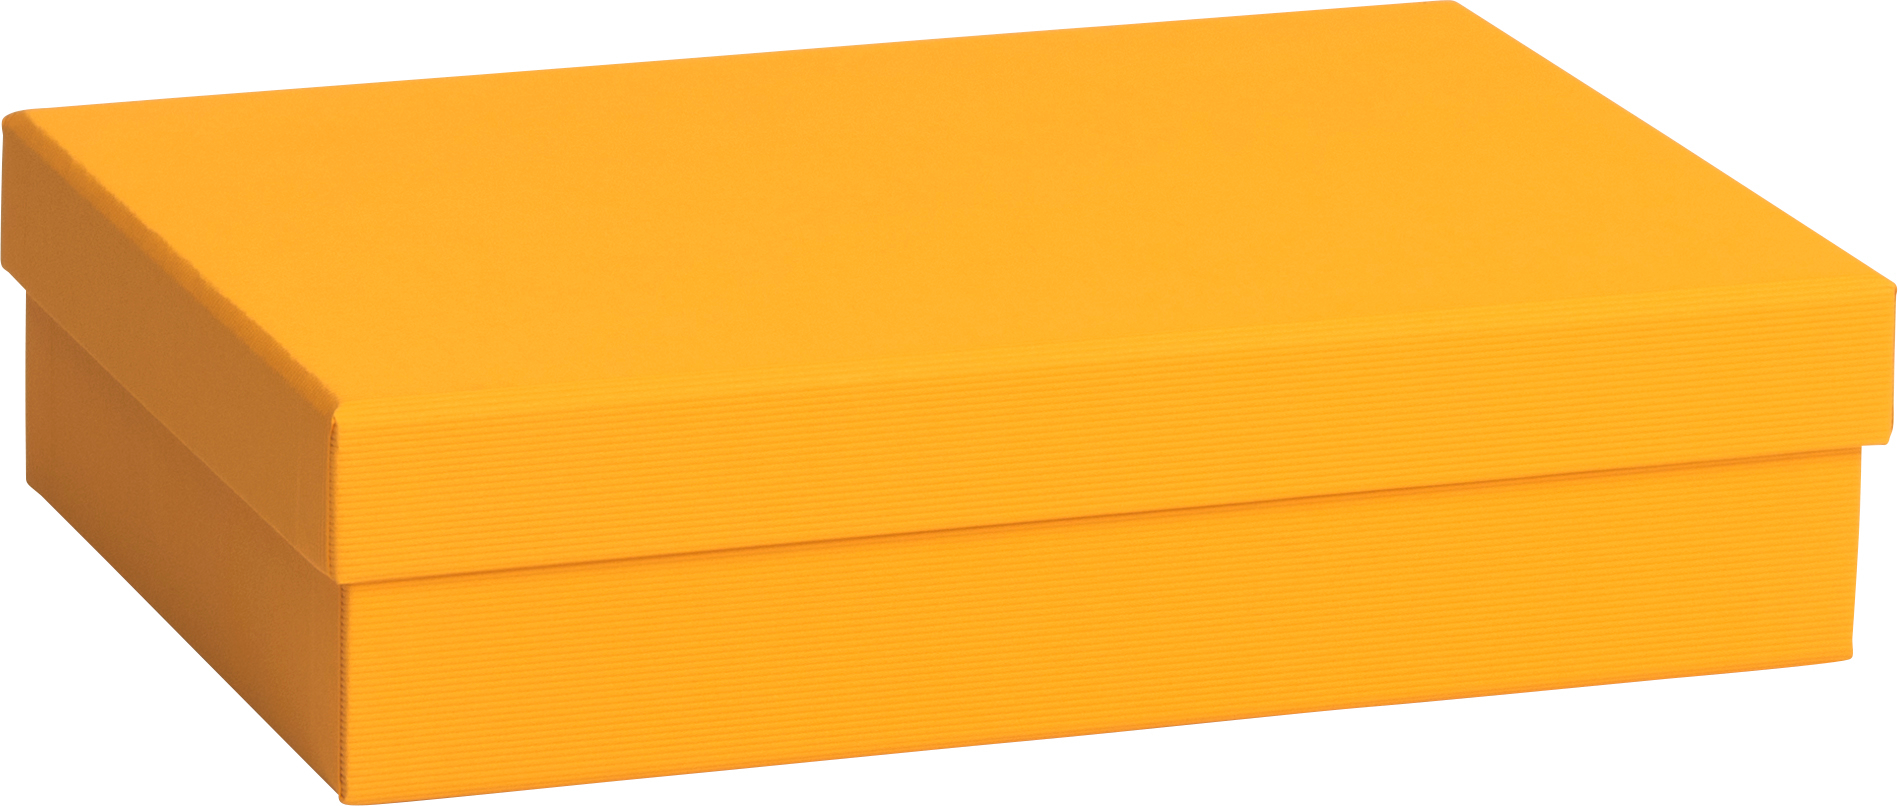 STEWO Boîte cadeau One Colour 2551784592 orange foncé 16.5x24x6cm orange foncé 16.5x24x6cm